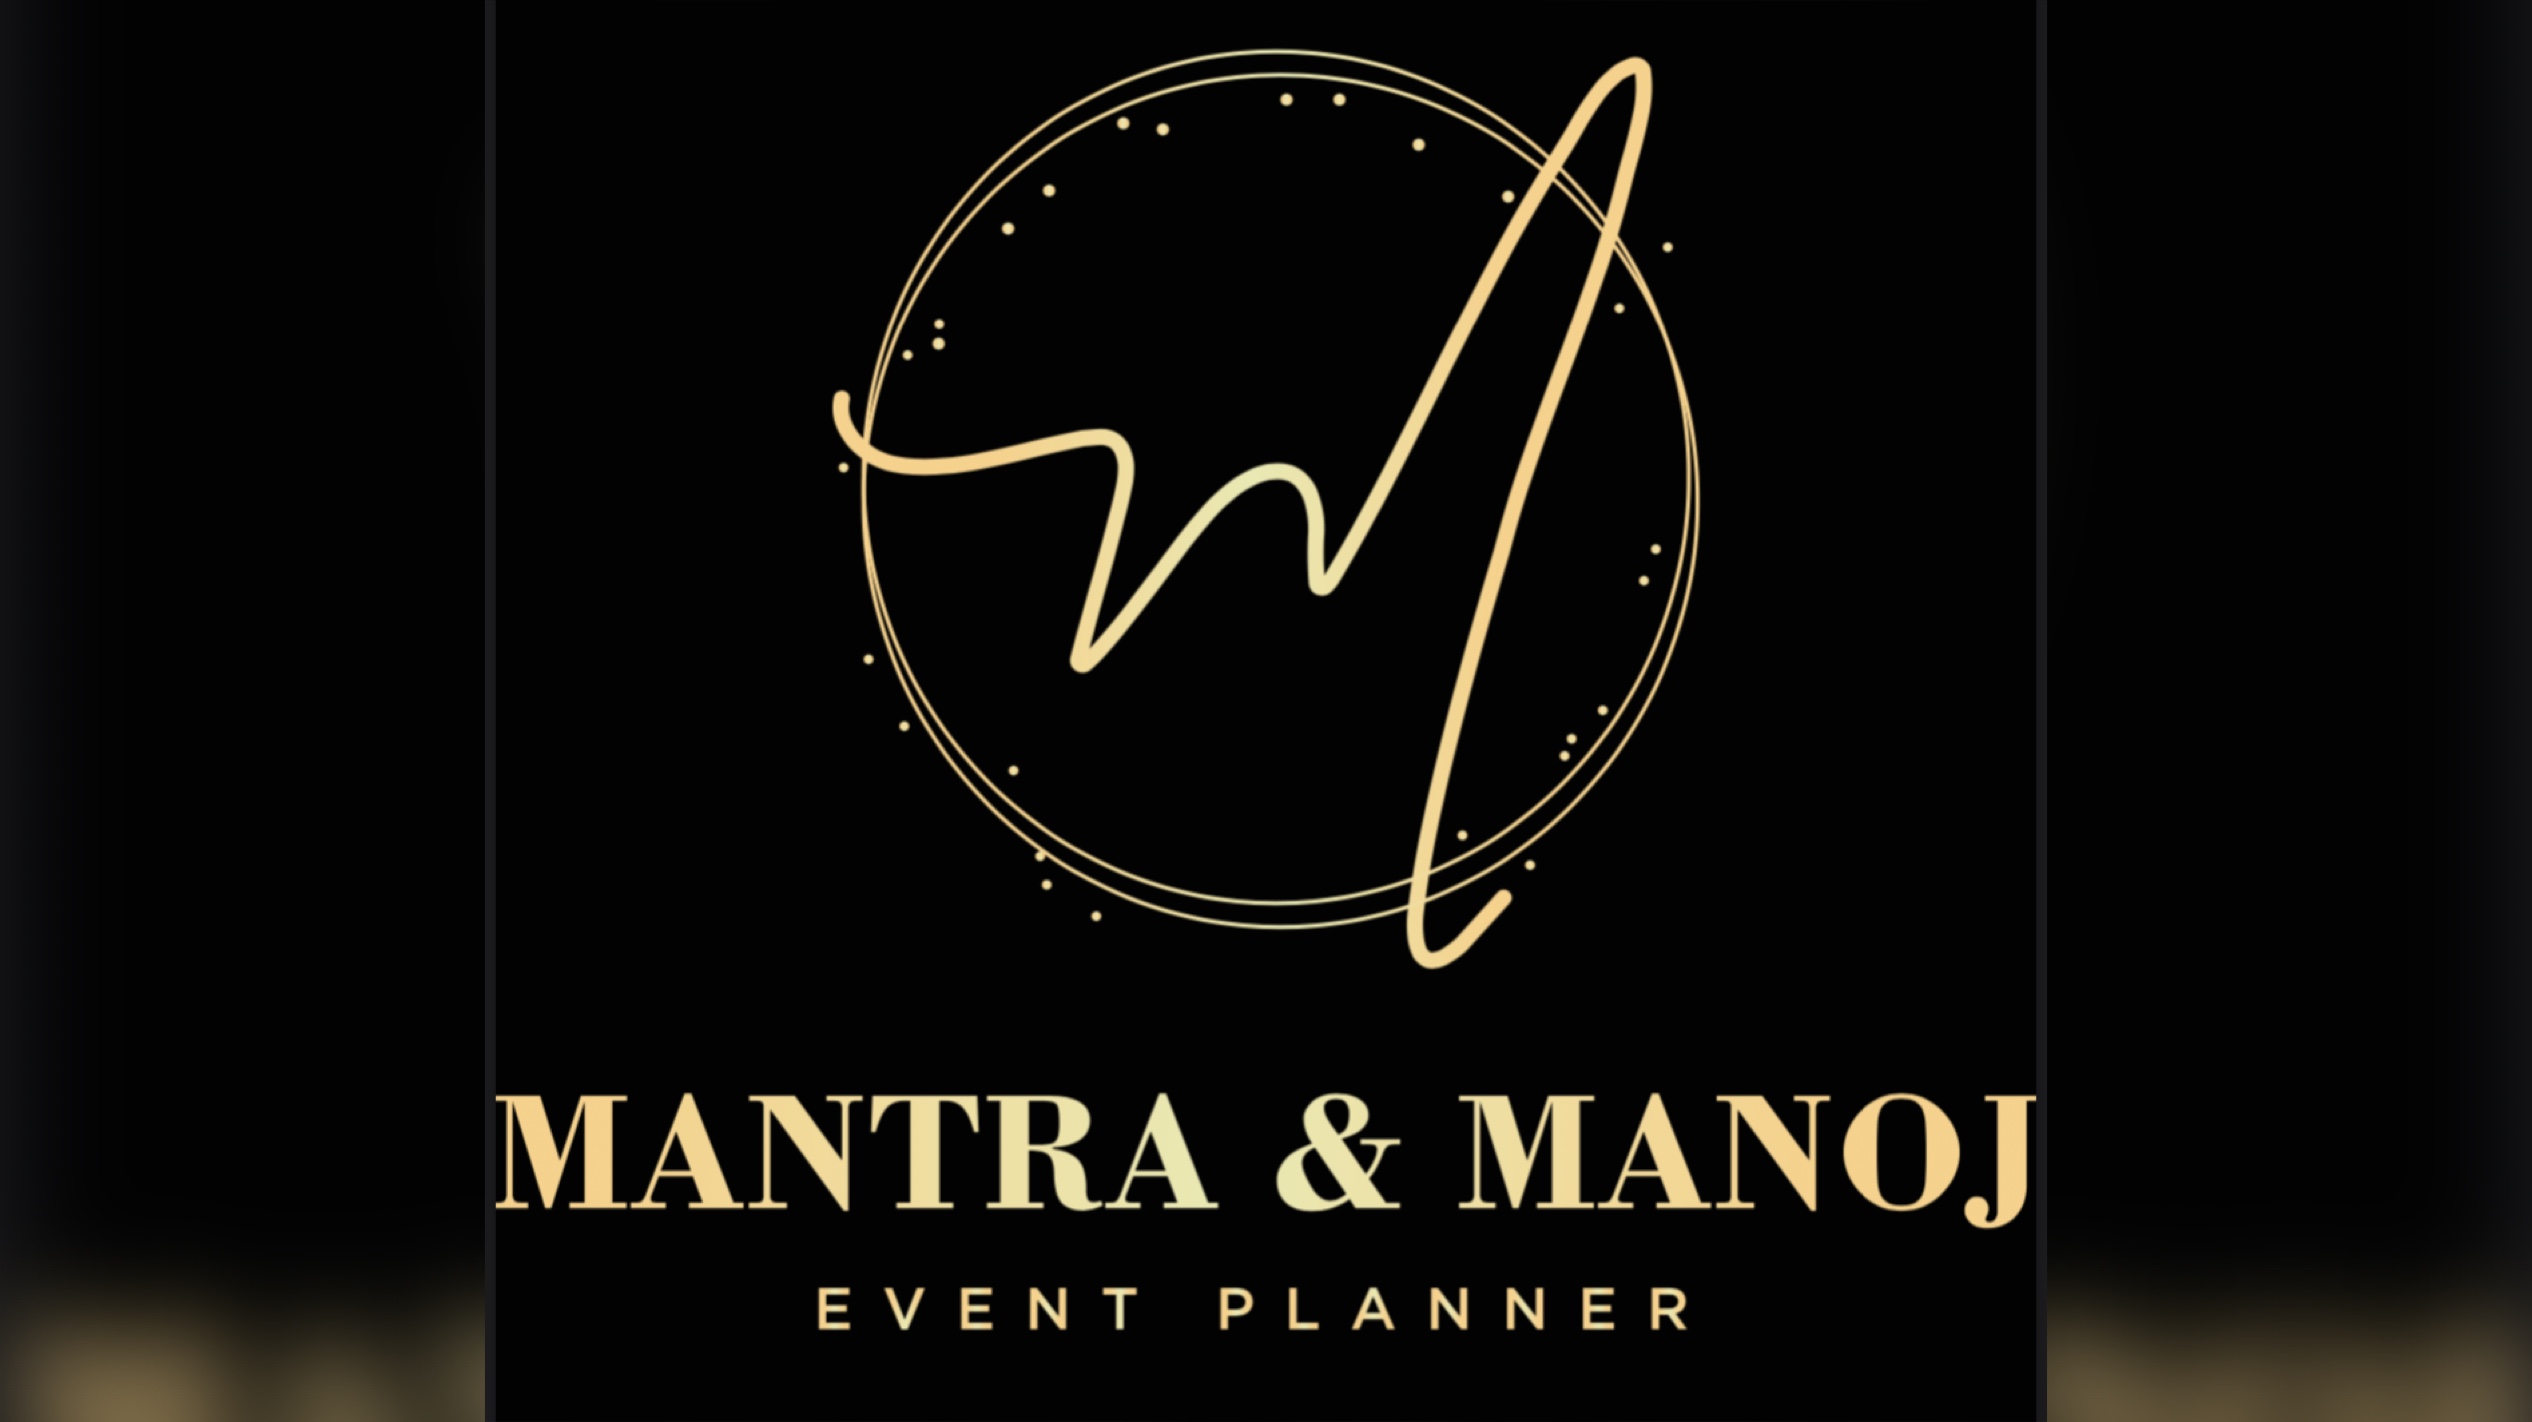 Mantra & Manoj Events